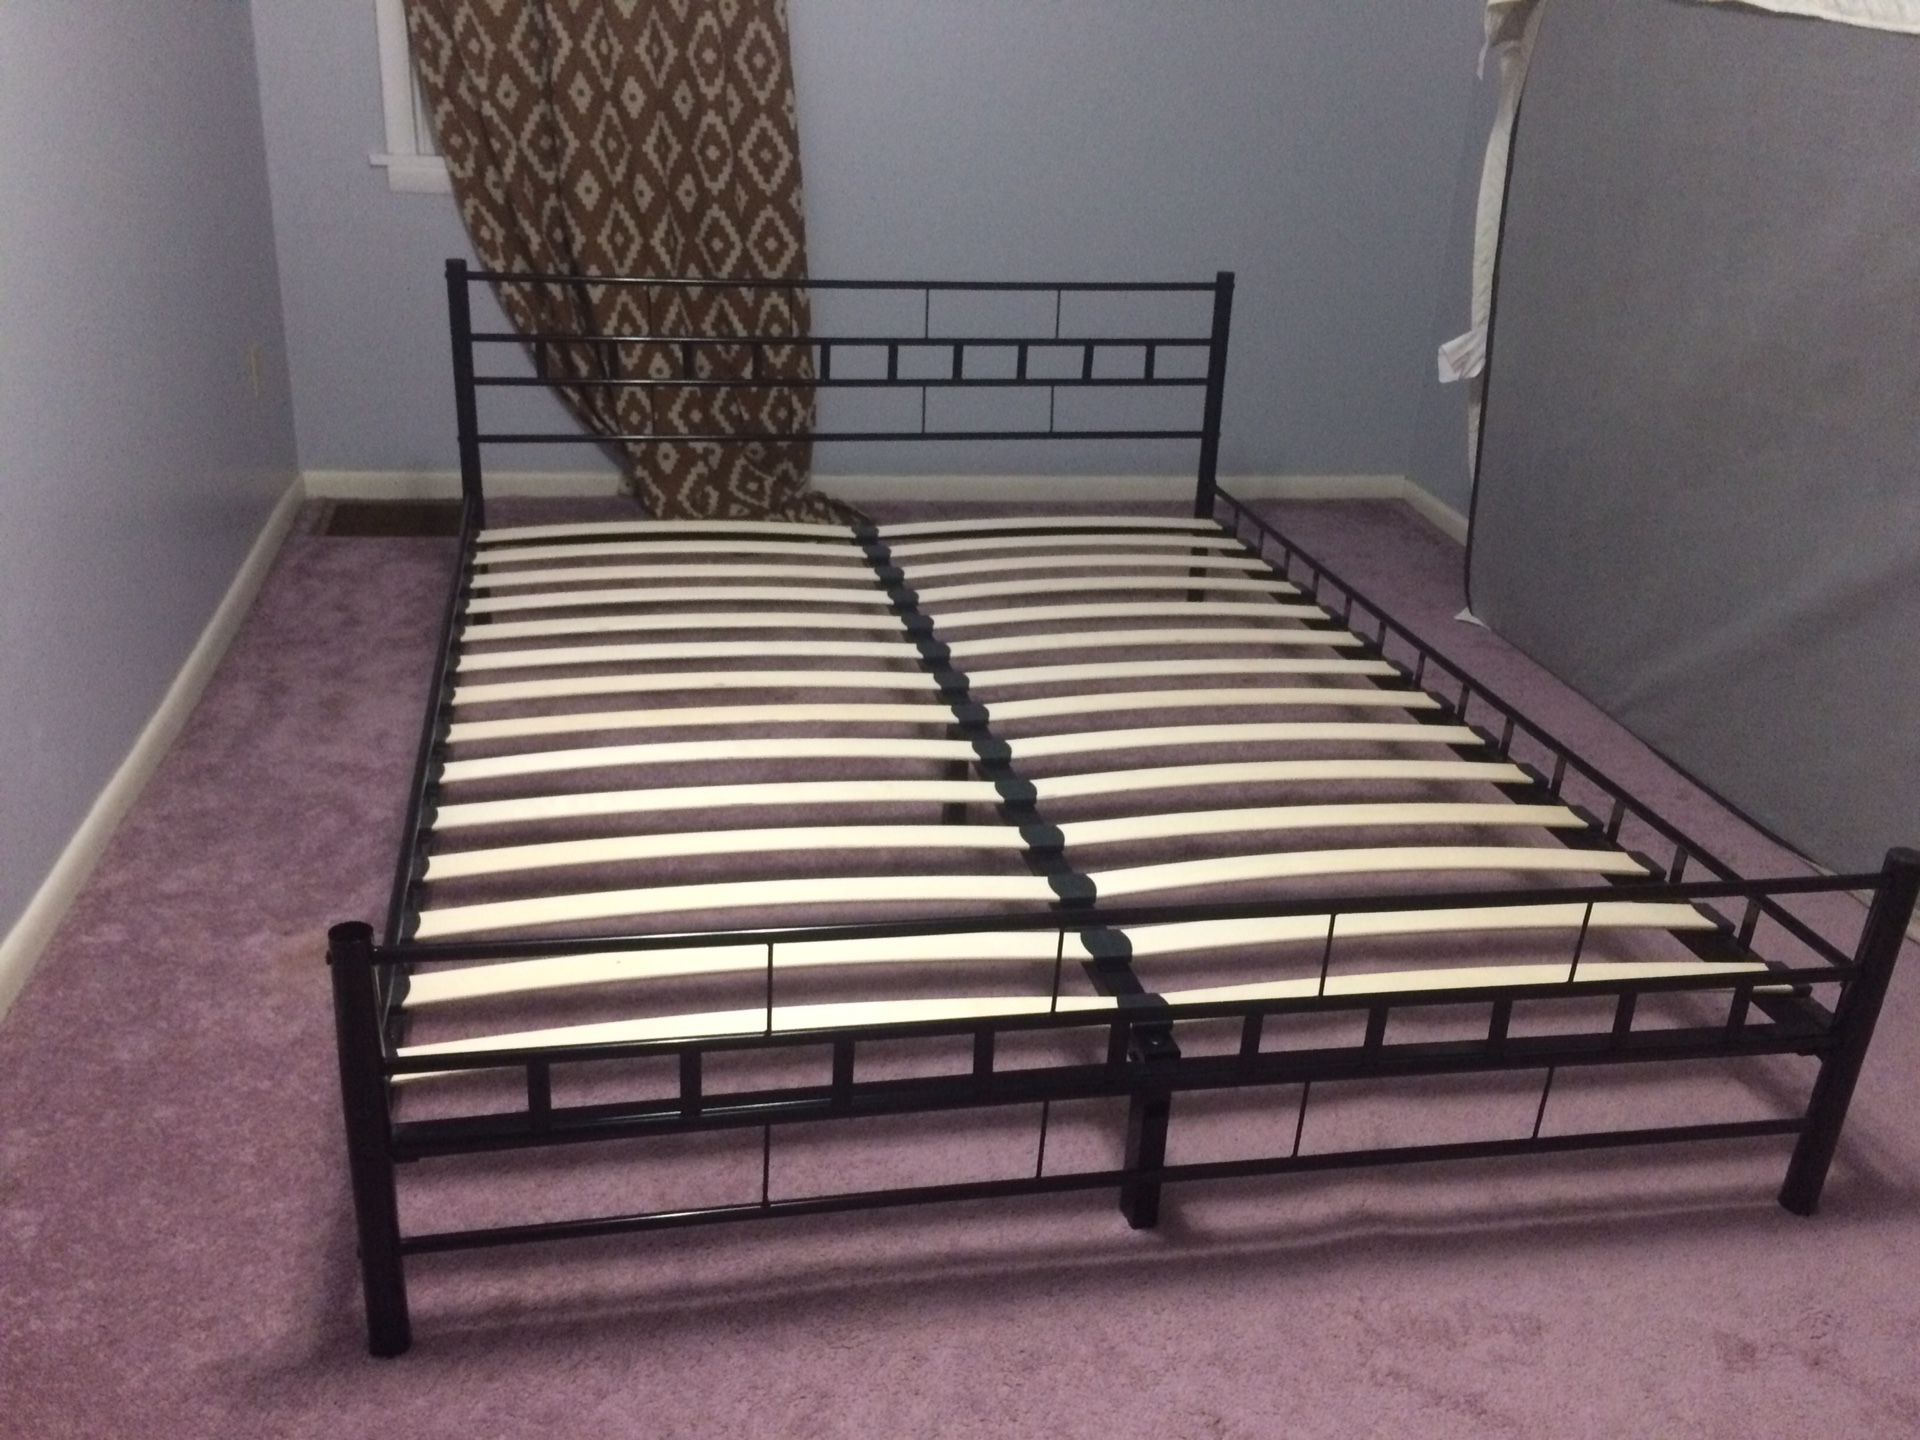 Metal Queen size bed with wooden slants